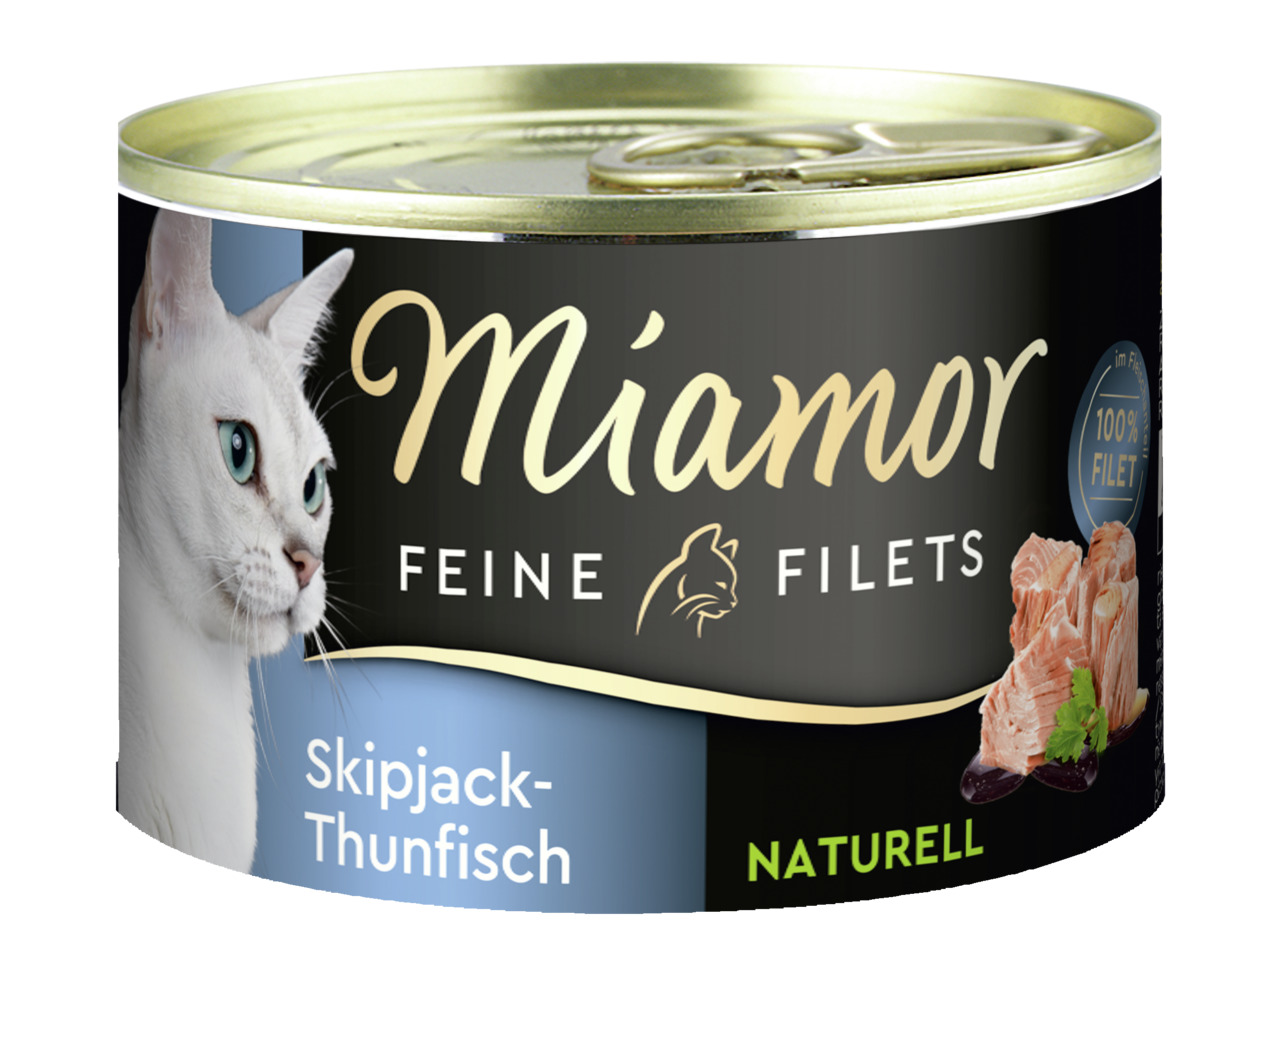 Miamor Feine Filets Skipjack-Thunfisch Naturell Katzen Nassfutter 156 g